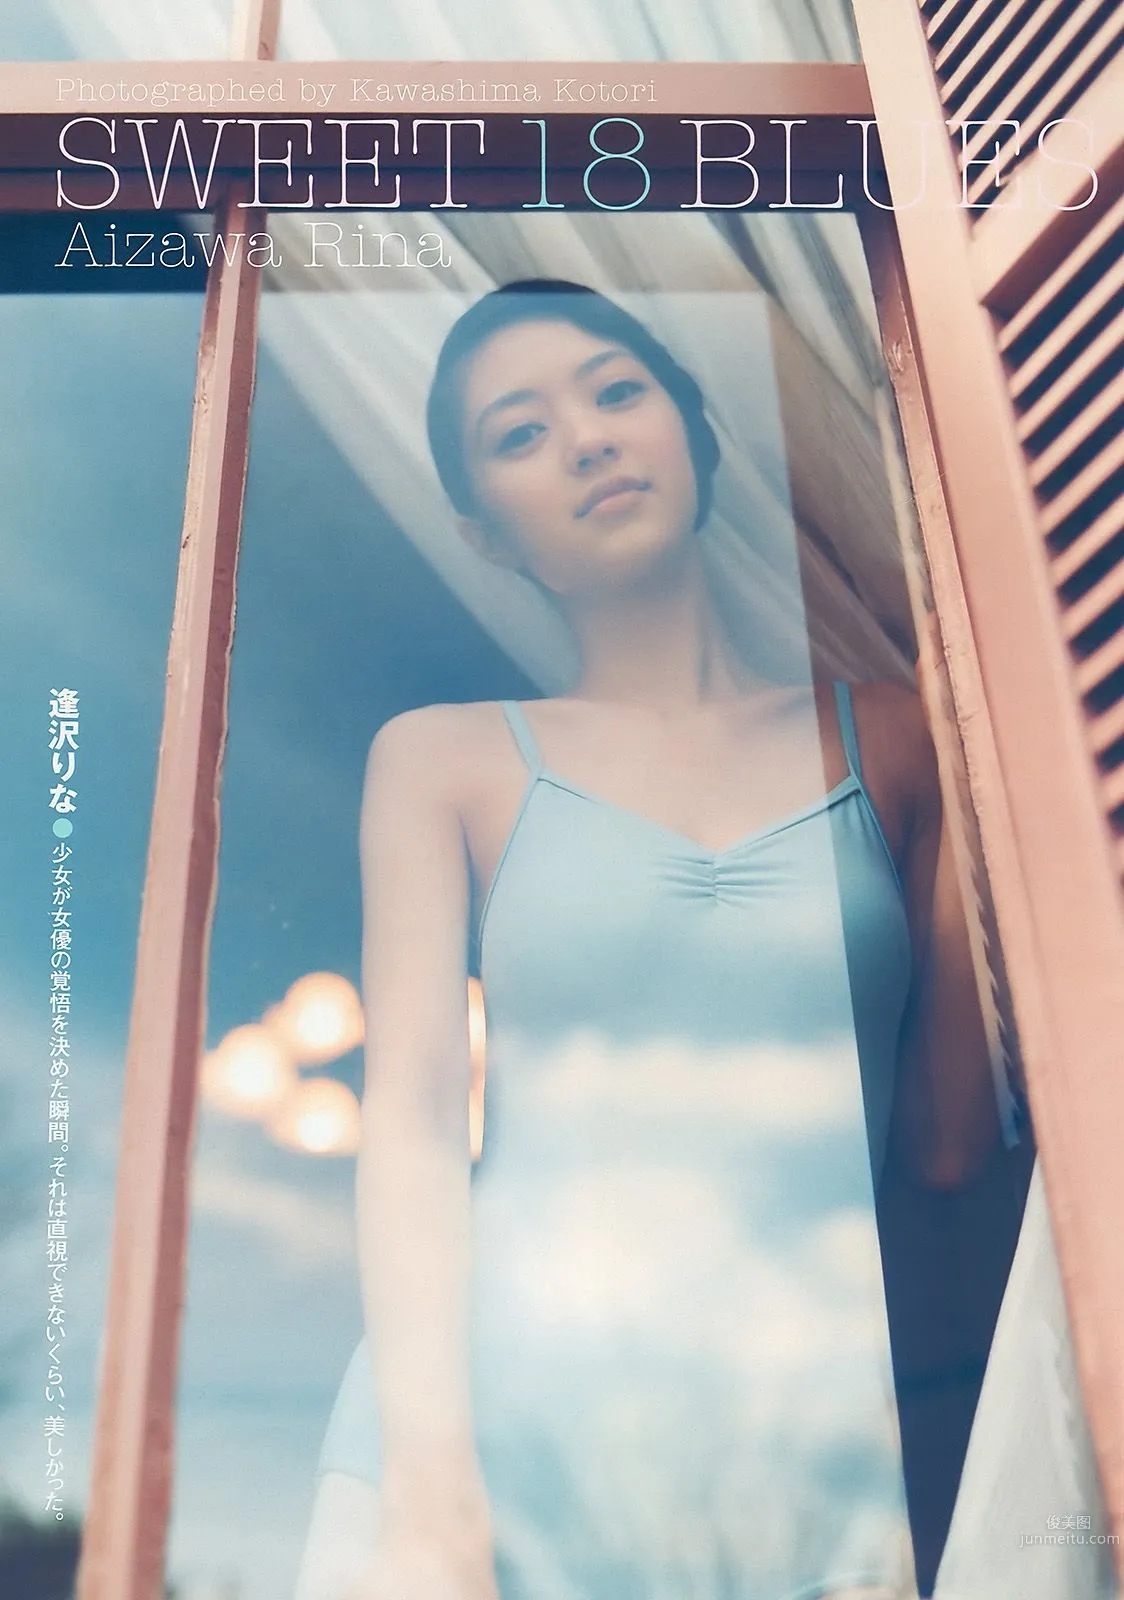 上戸彩 逢沢りな 甲斐まり恵 AKB48 白石美帆 後藤理沙 [Weekly Playboy] 2010年No.19-20 写真杂志8